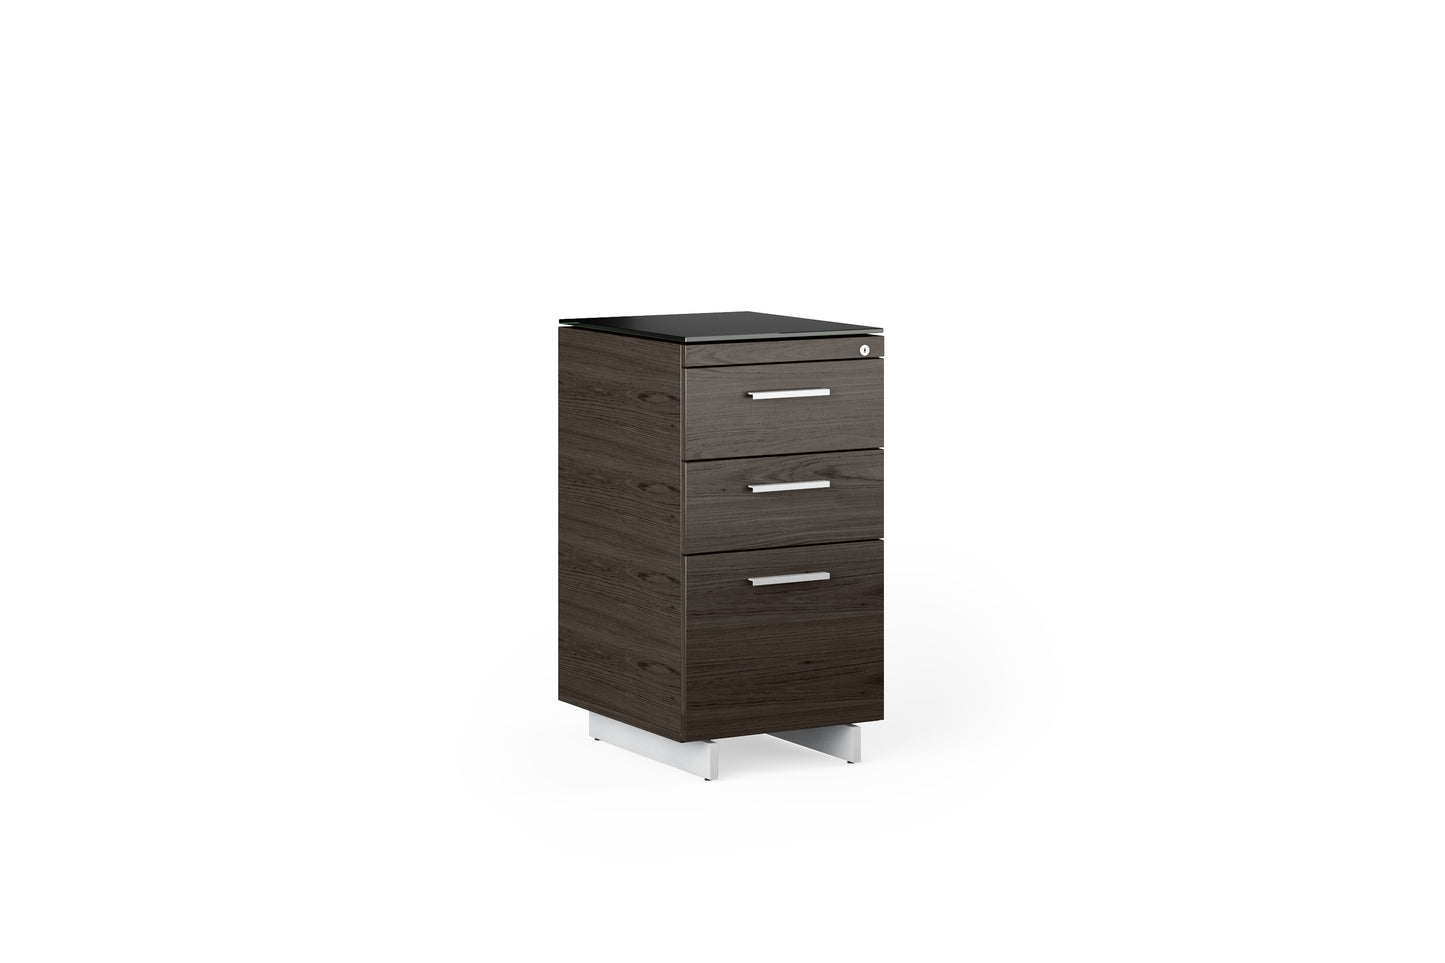 Sequel 6114 3 Drawer File & Storage Cabinet